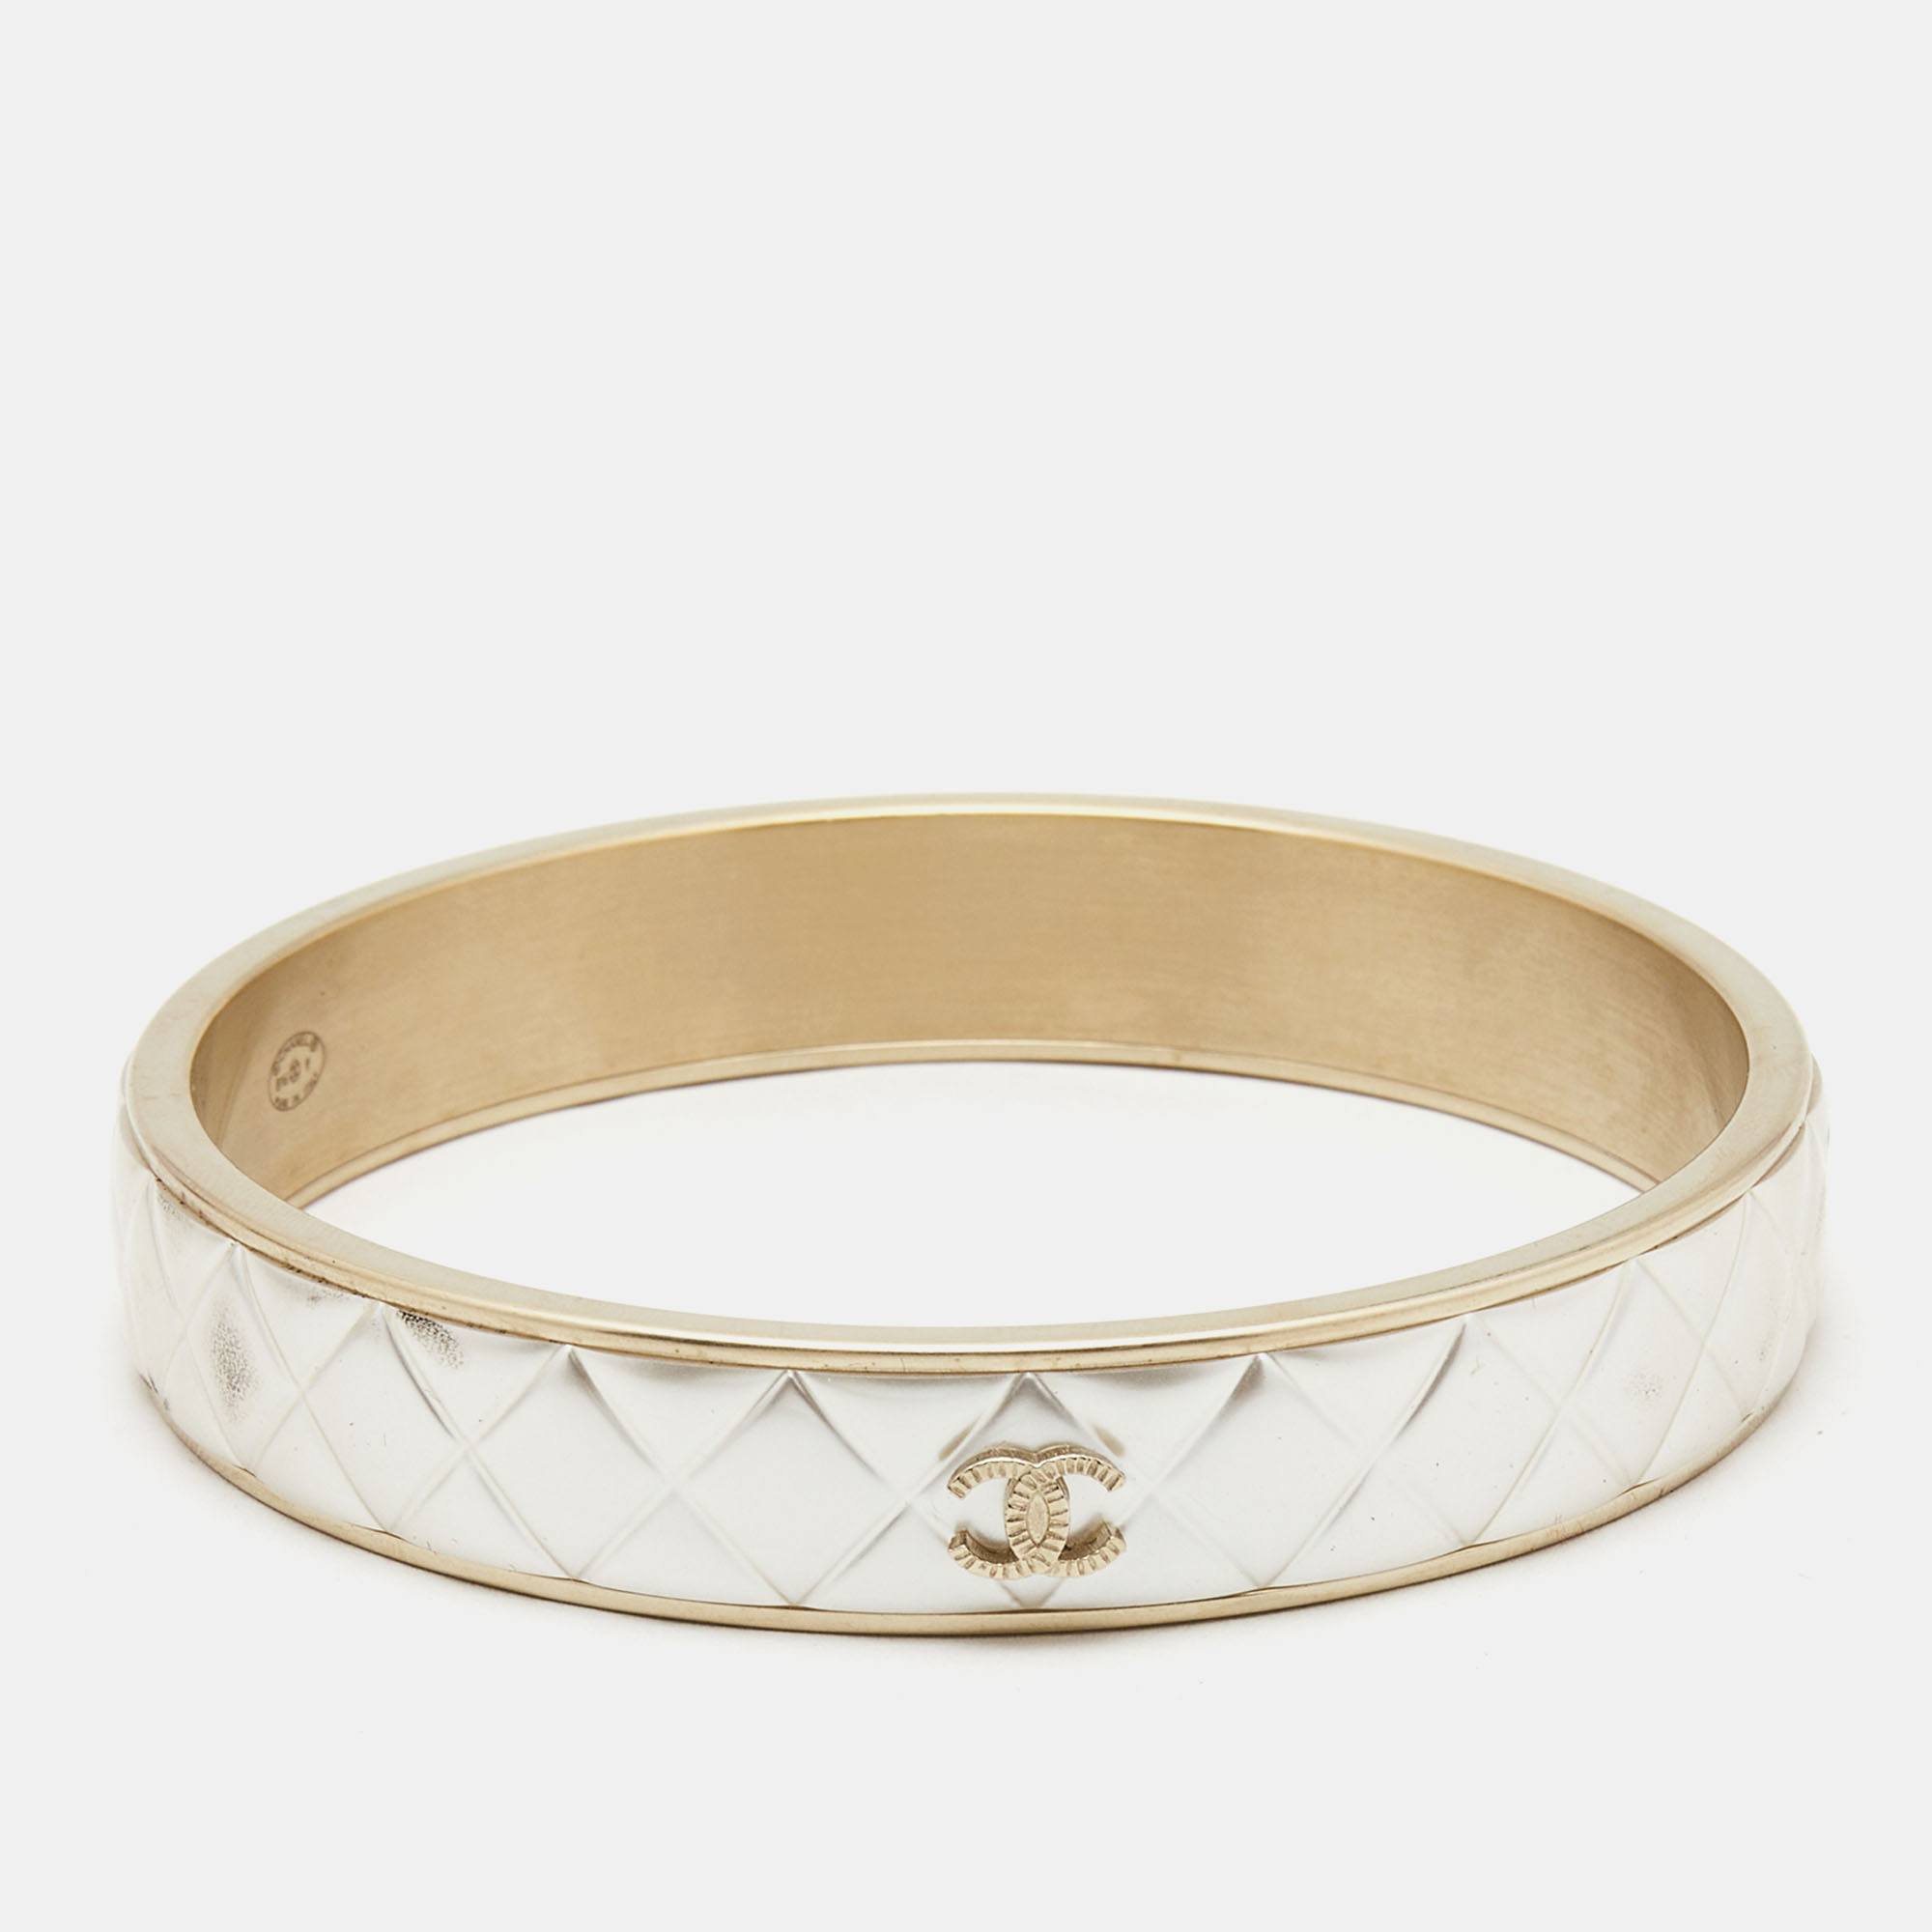 Chanel cc composite gold tone bangle bracelet